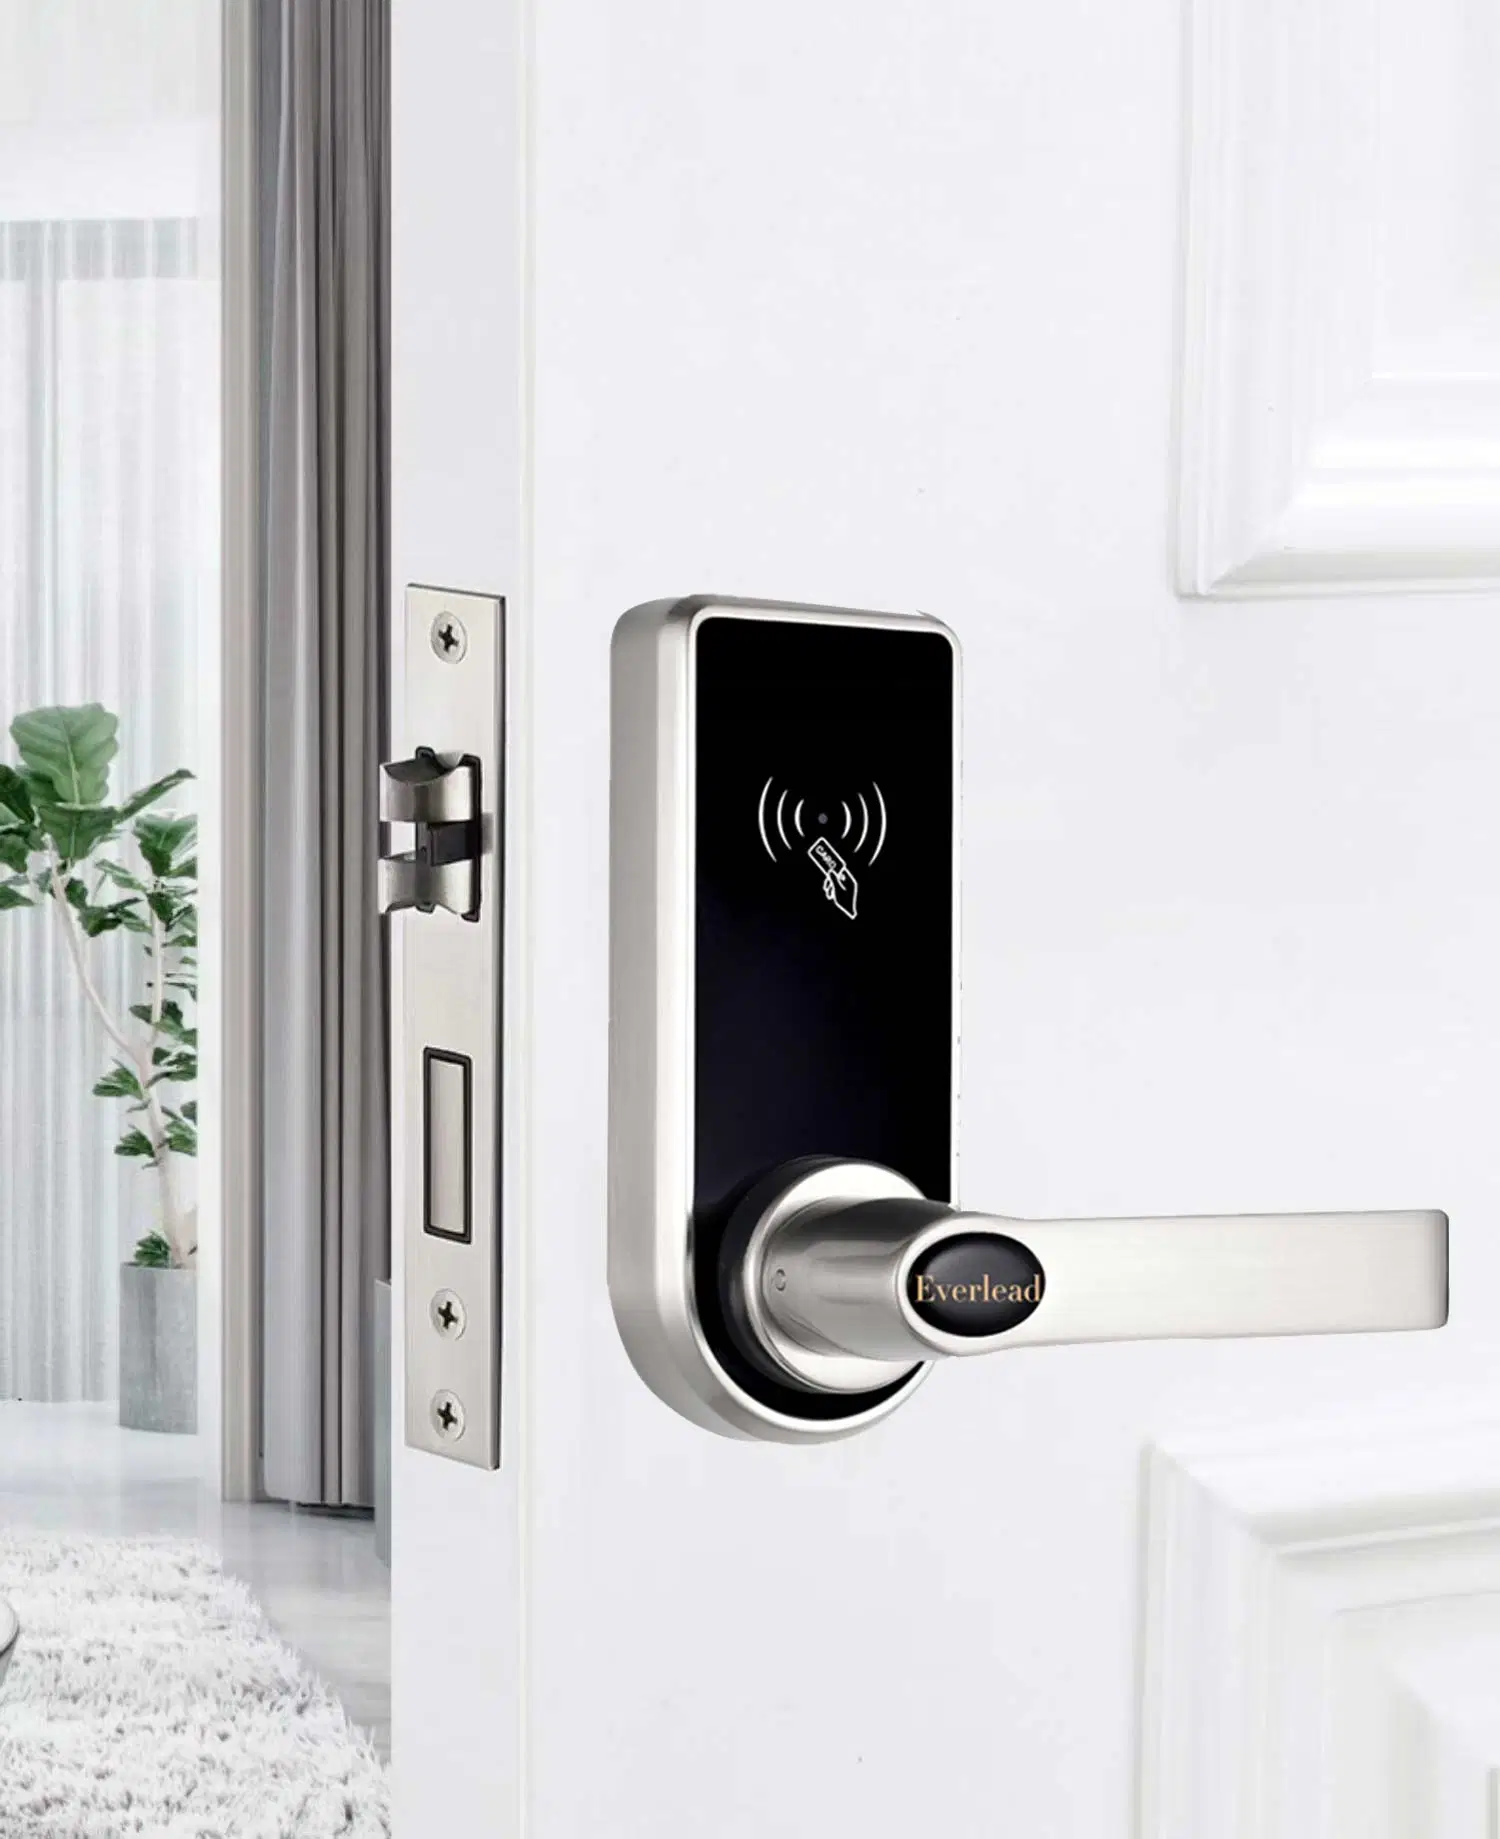 OEM Home Remote Control Door Lock Bluetooth Smart Digital Door Lock for Home Hotel Office Lock